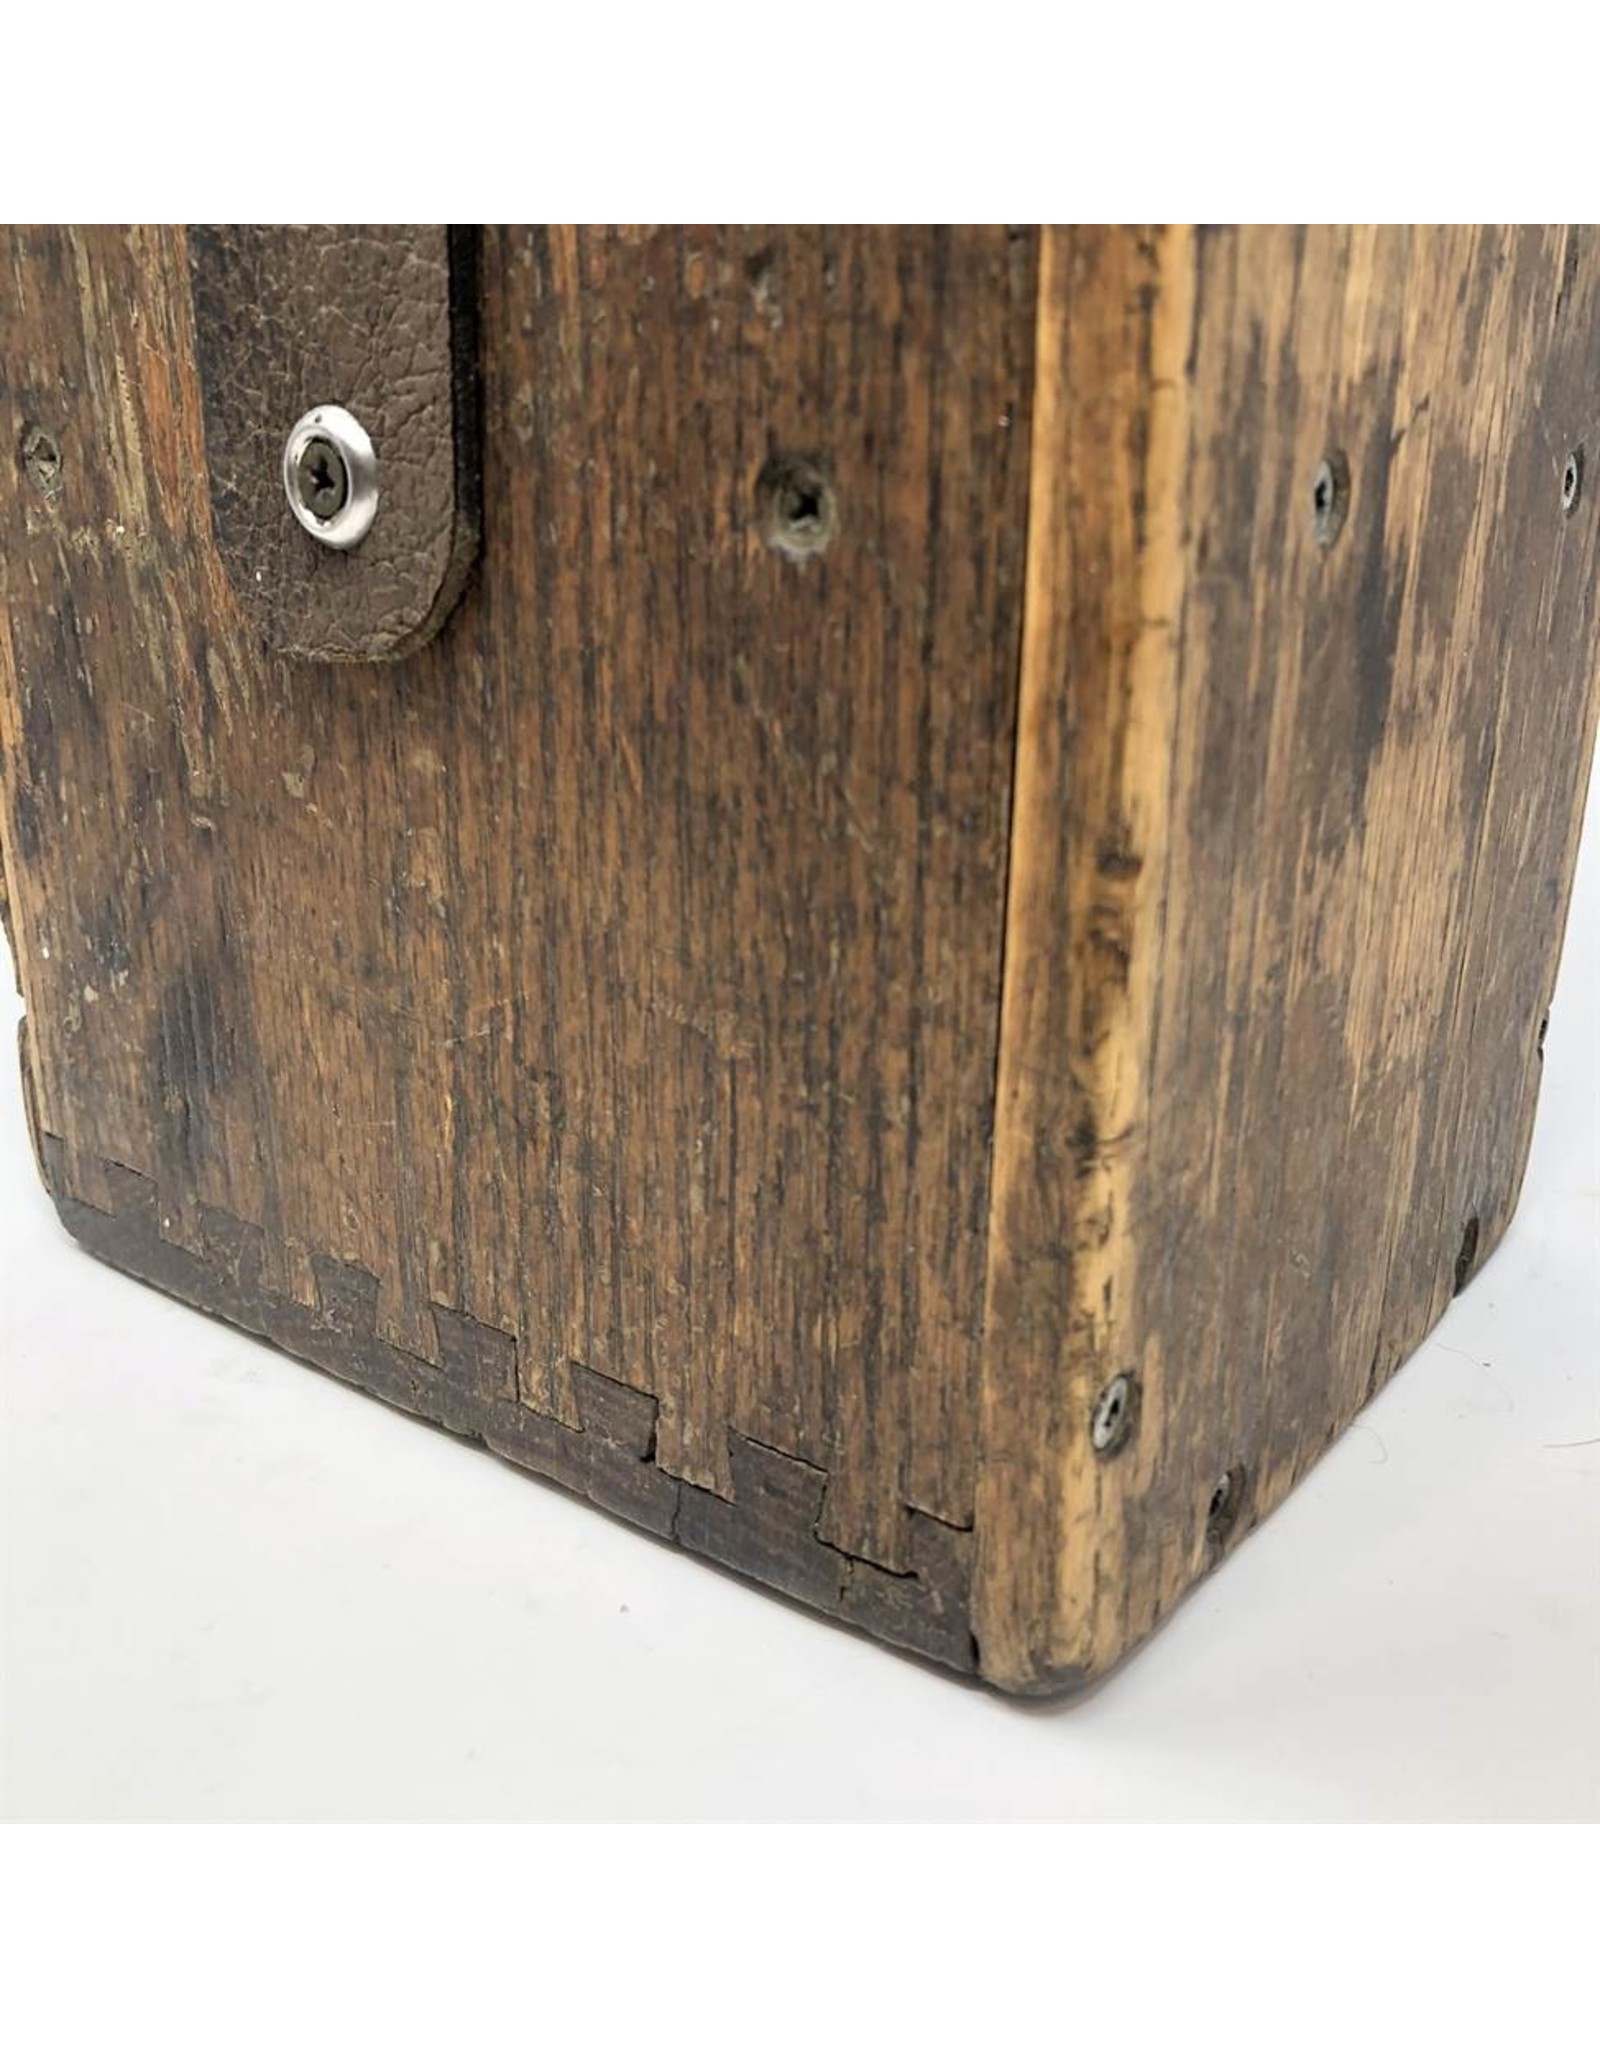 Dynamite plunger - vintage, wooden case, functioning